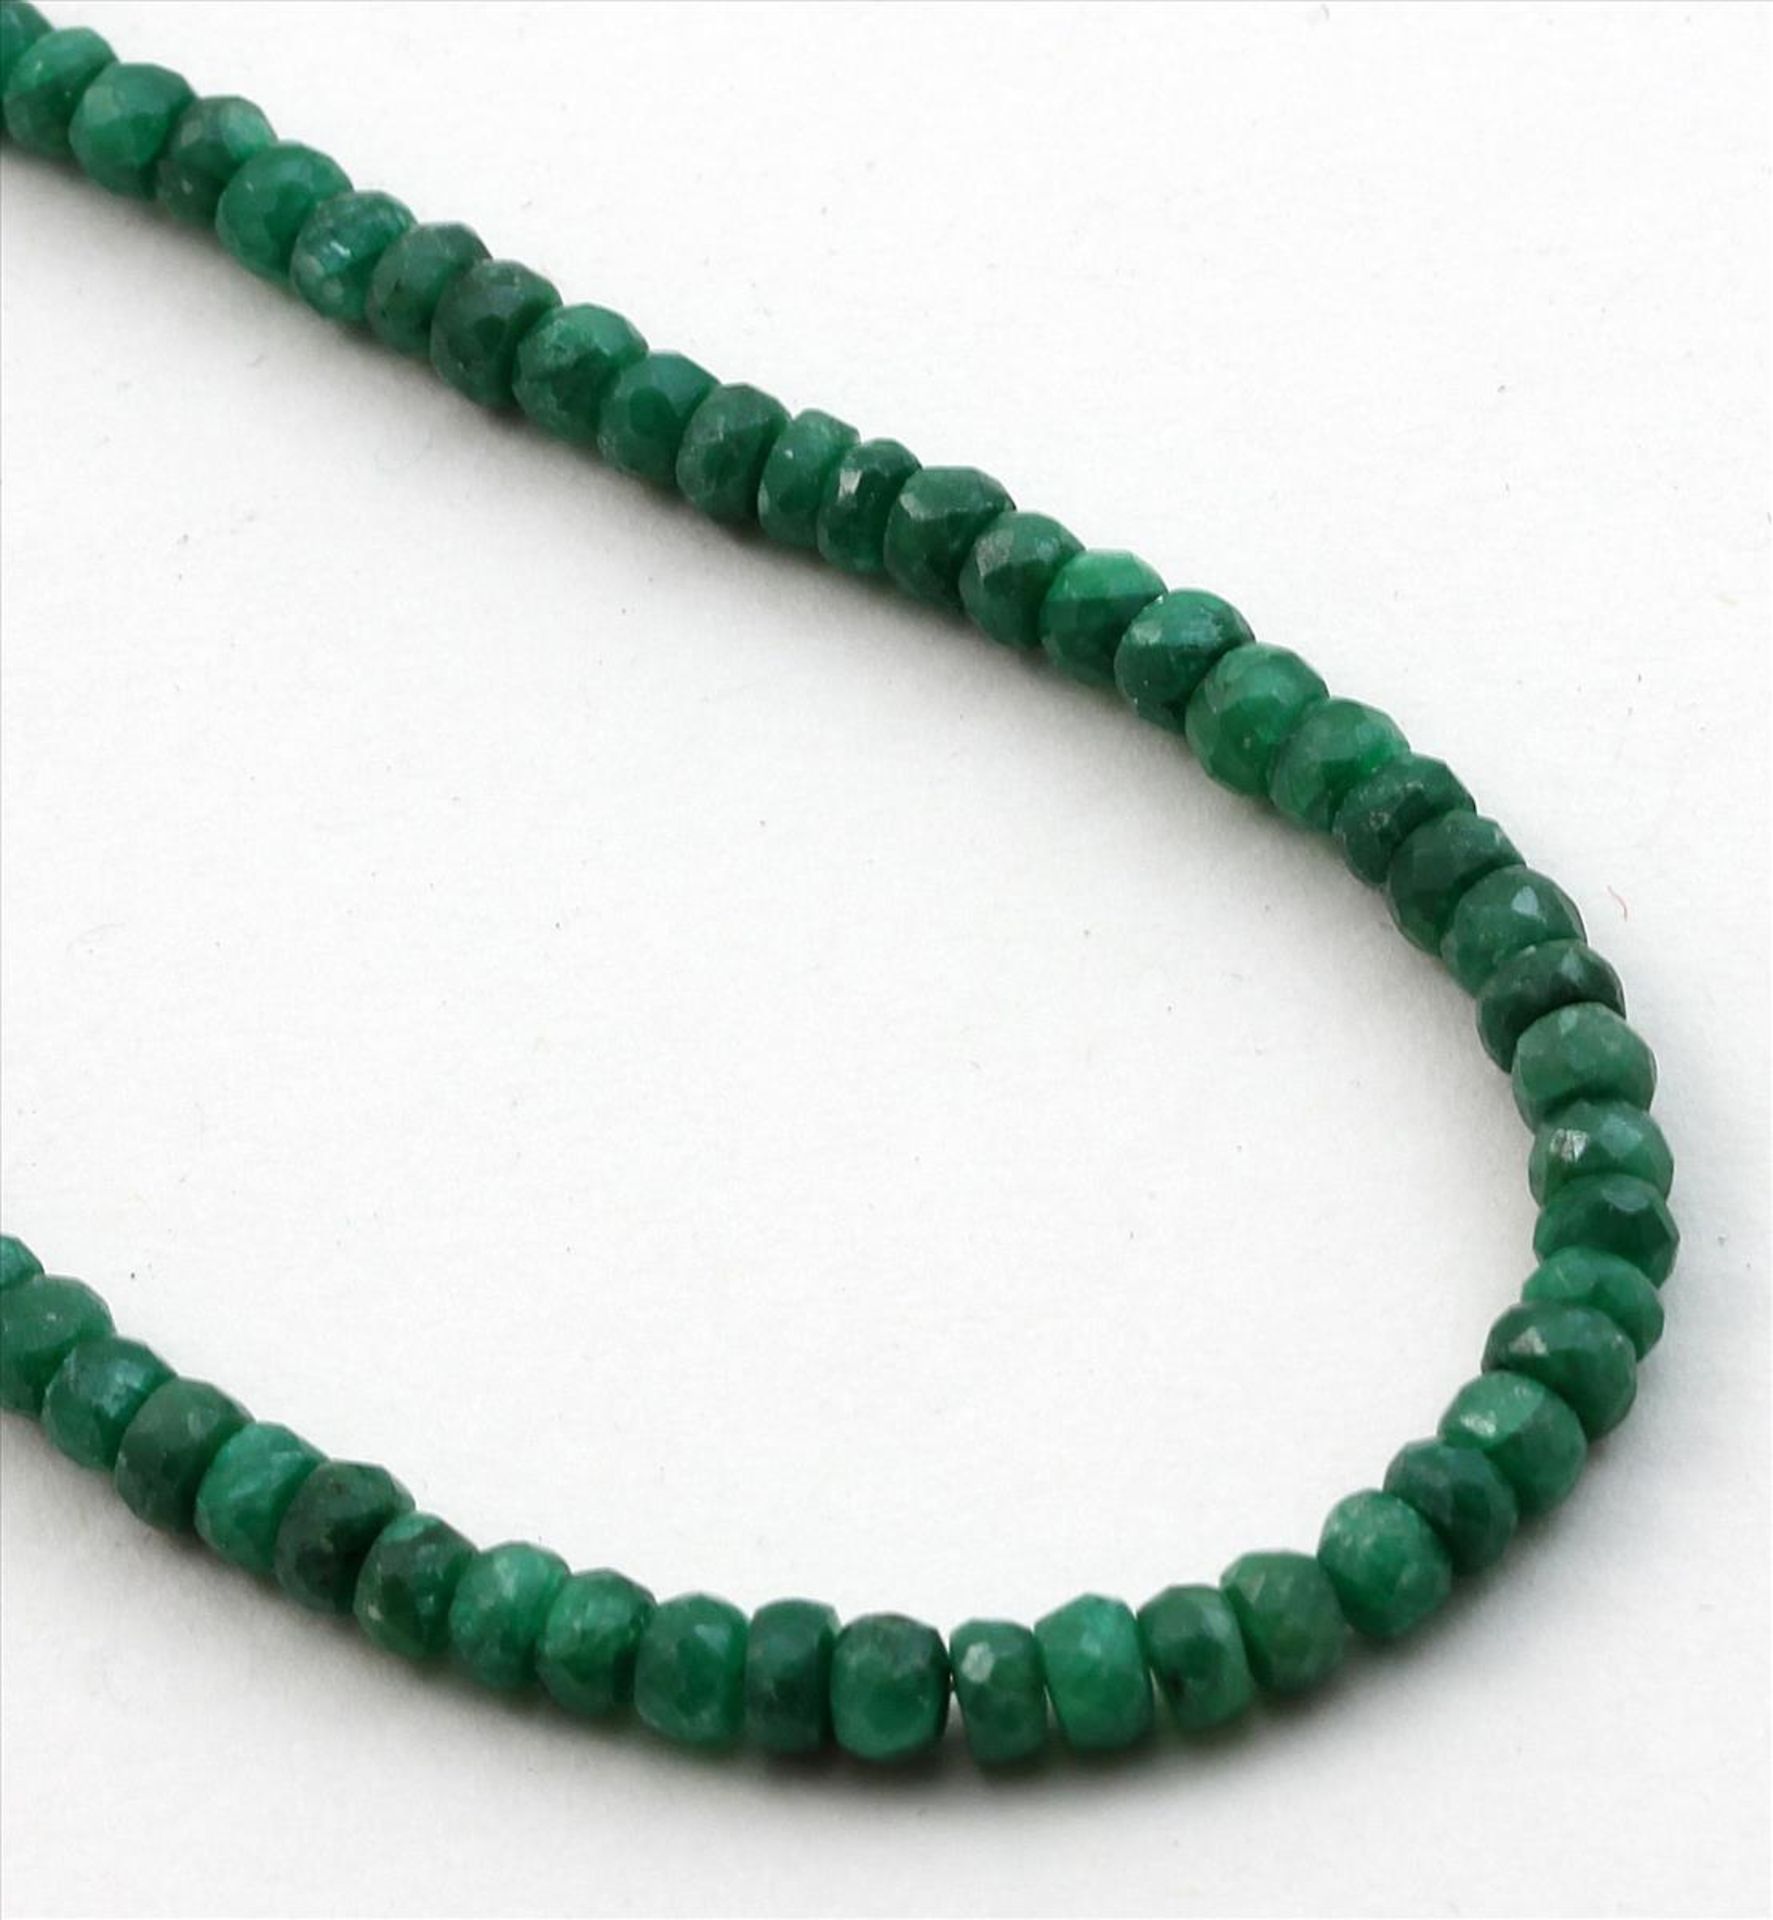 Smaragdkette.Facettierte, opake Smaragd-Rondelle, D. ca. 4 mm. 925/000 Sterlingsilber-